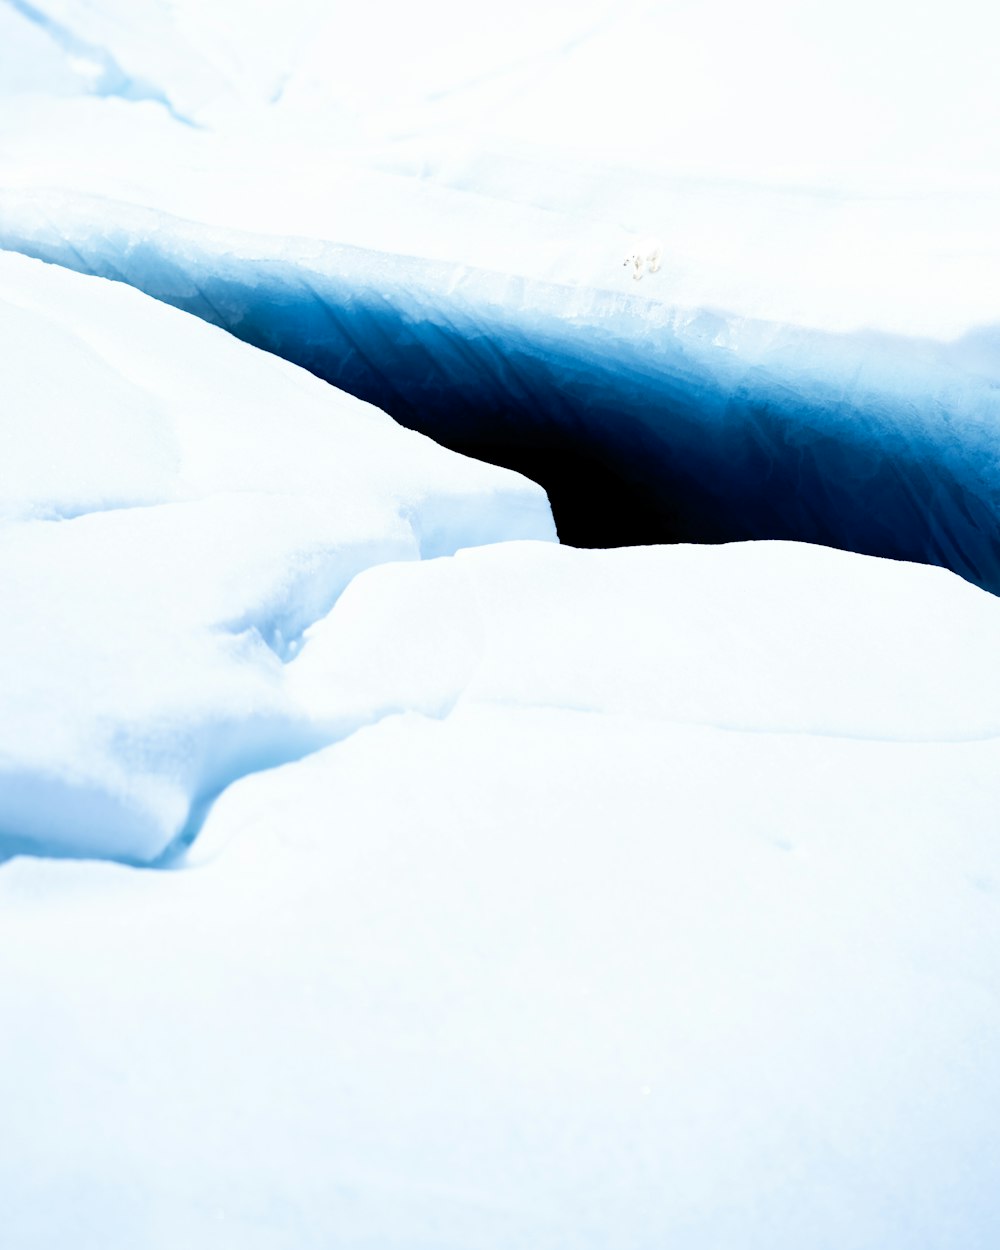 Ein tiefblaues Loch im Schnee